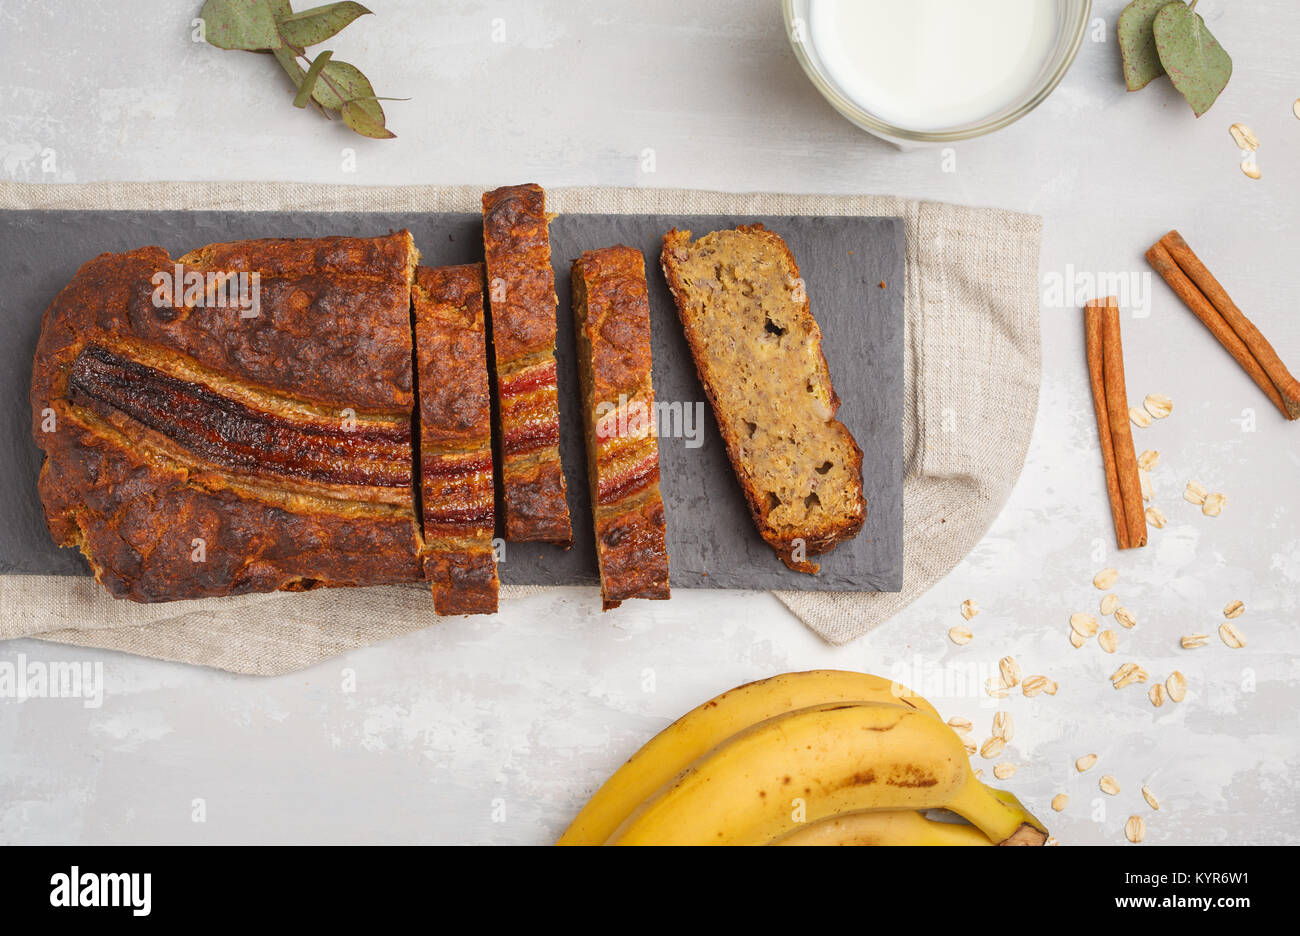 Rodajas de pan de plátano con canela en una pizarra negra. Concepto de comida vegana saludable. Vista desde arriba. Foto de stock